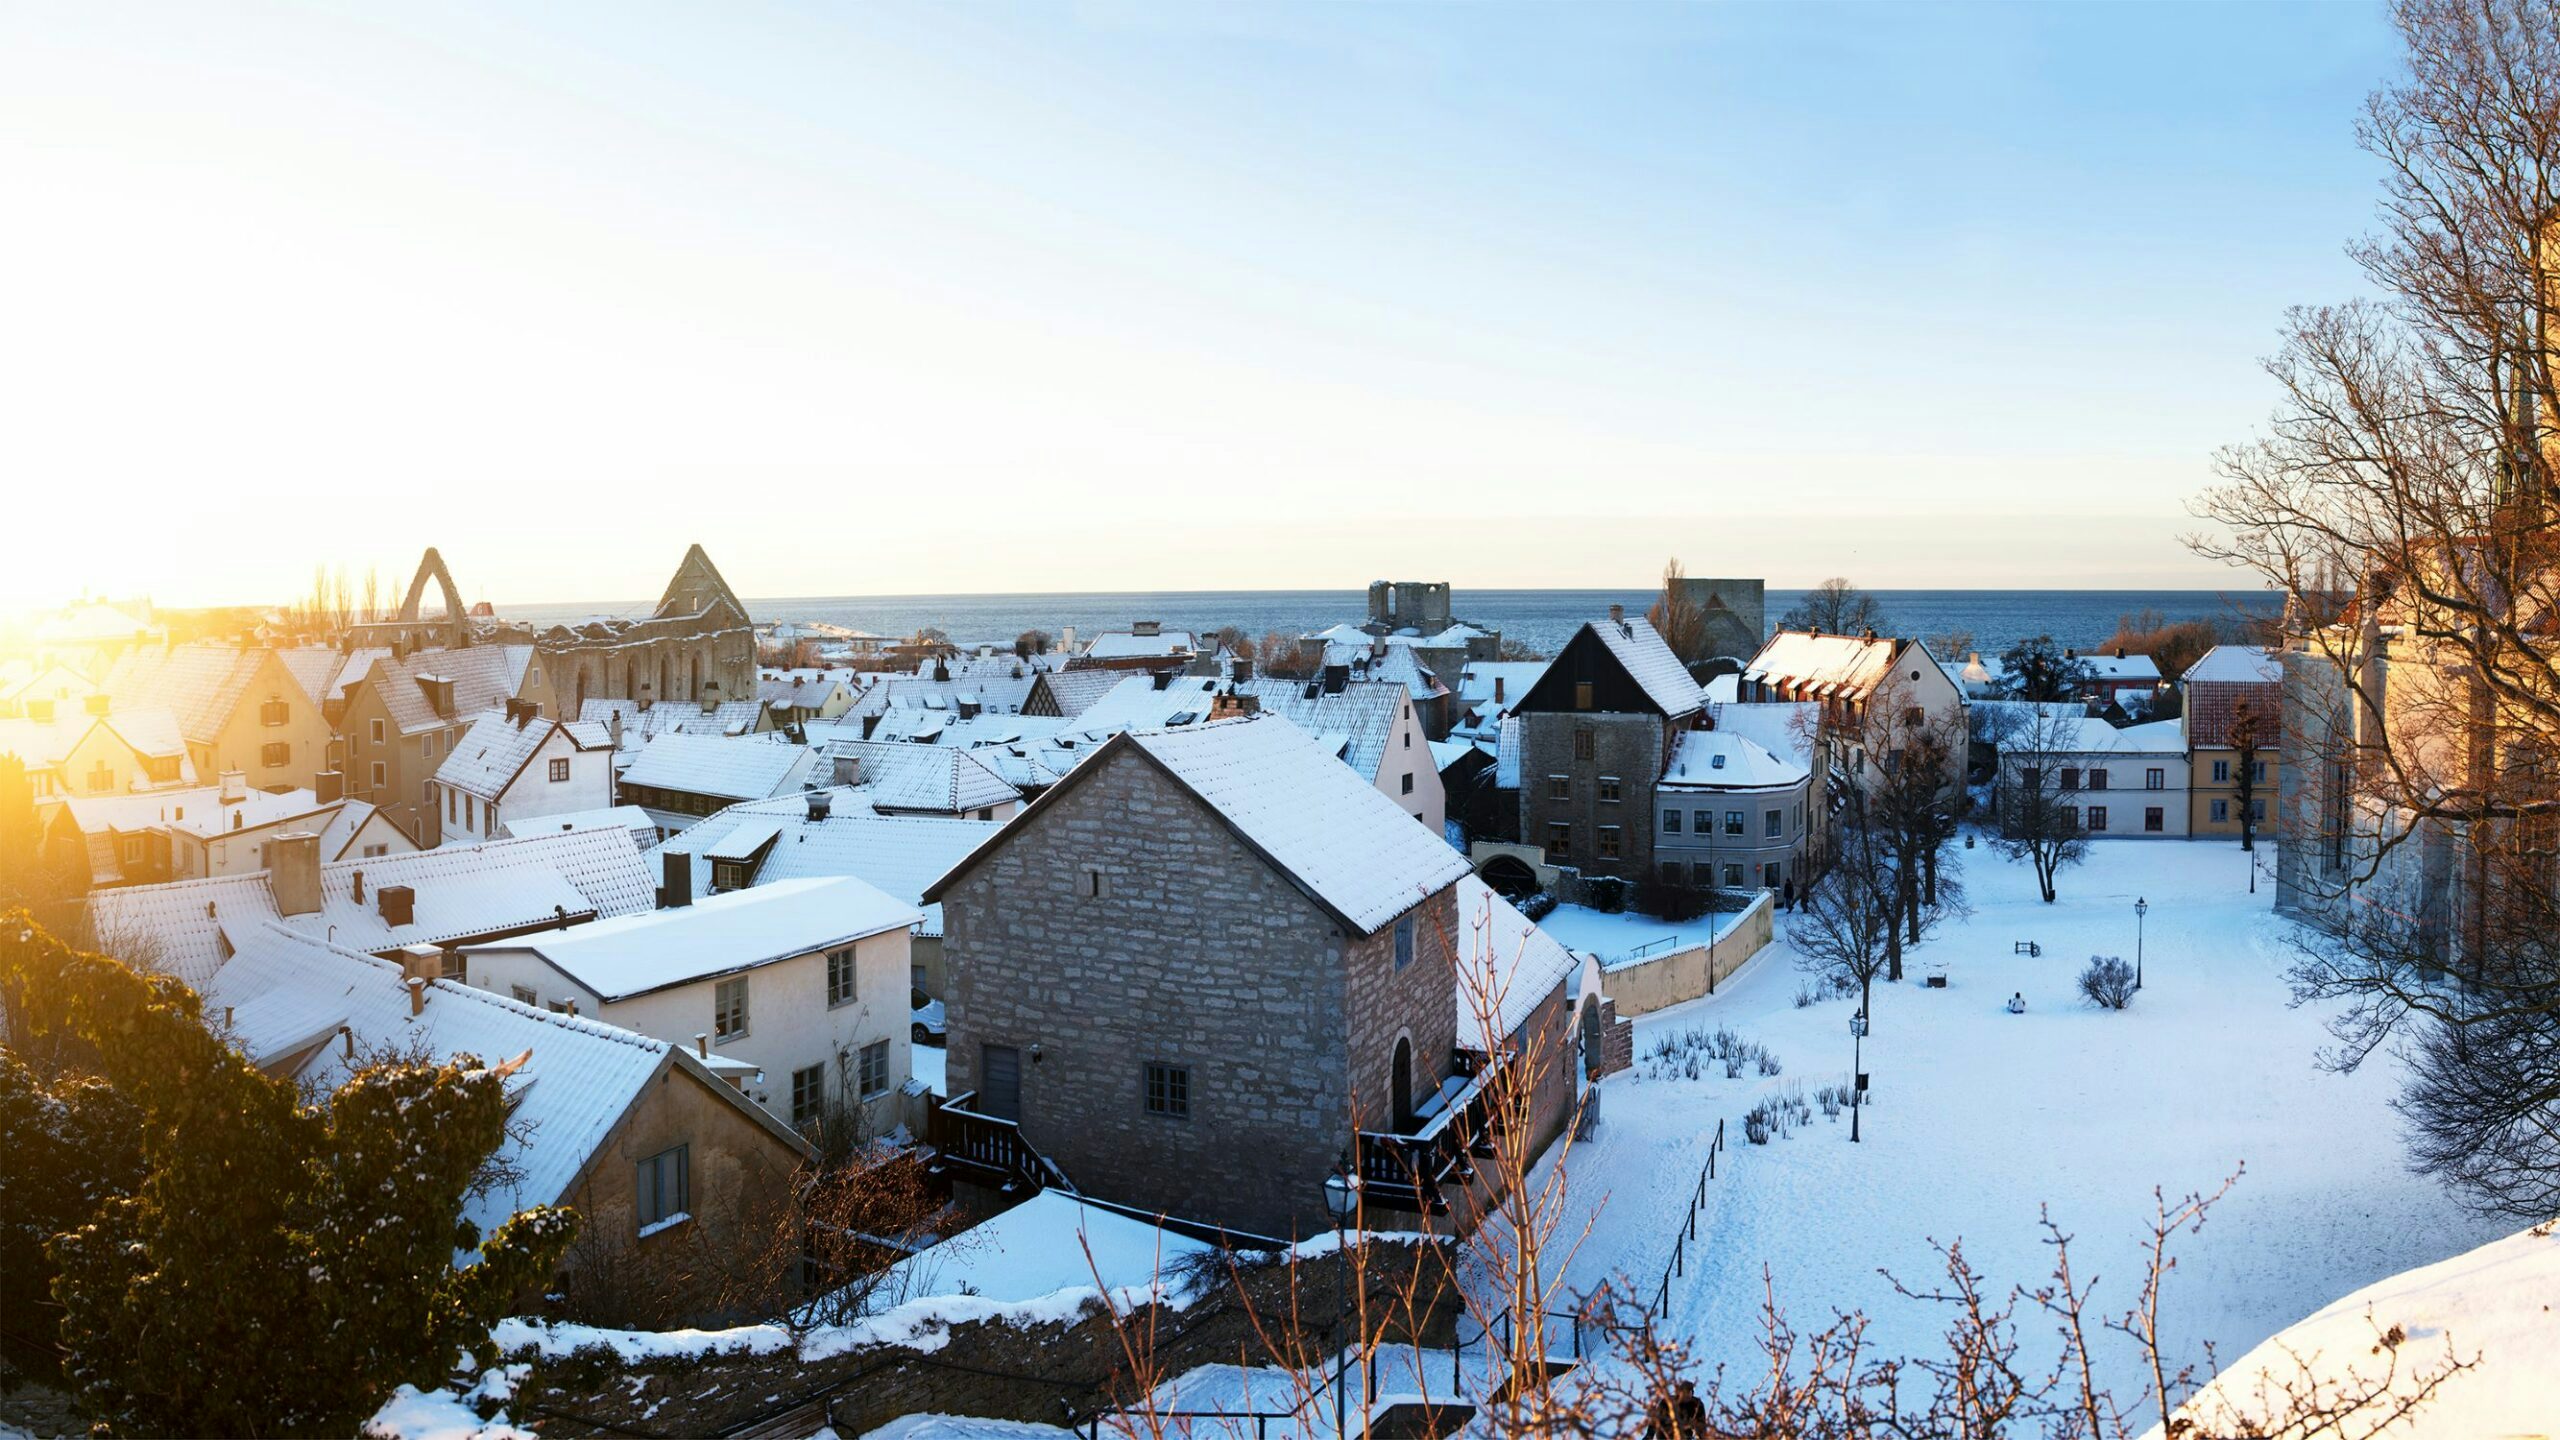 Visby i snö, utsikt från Kyrkberget